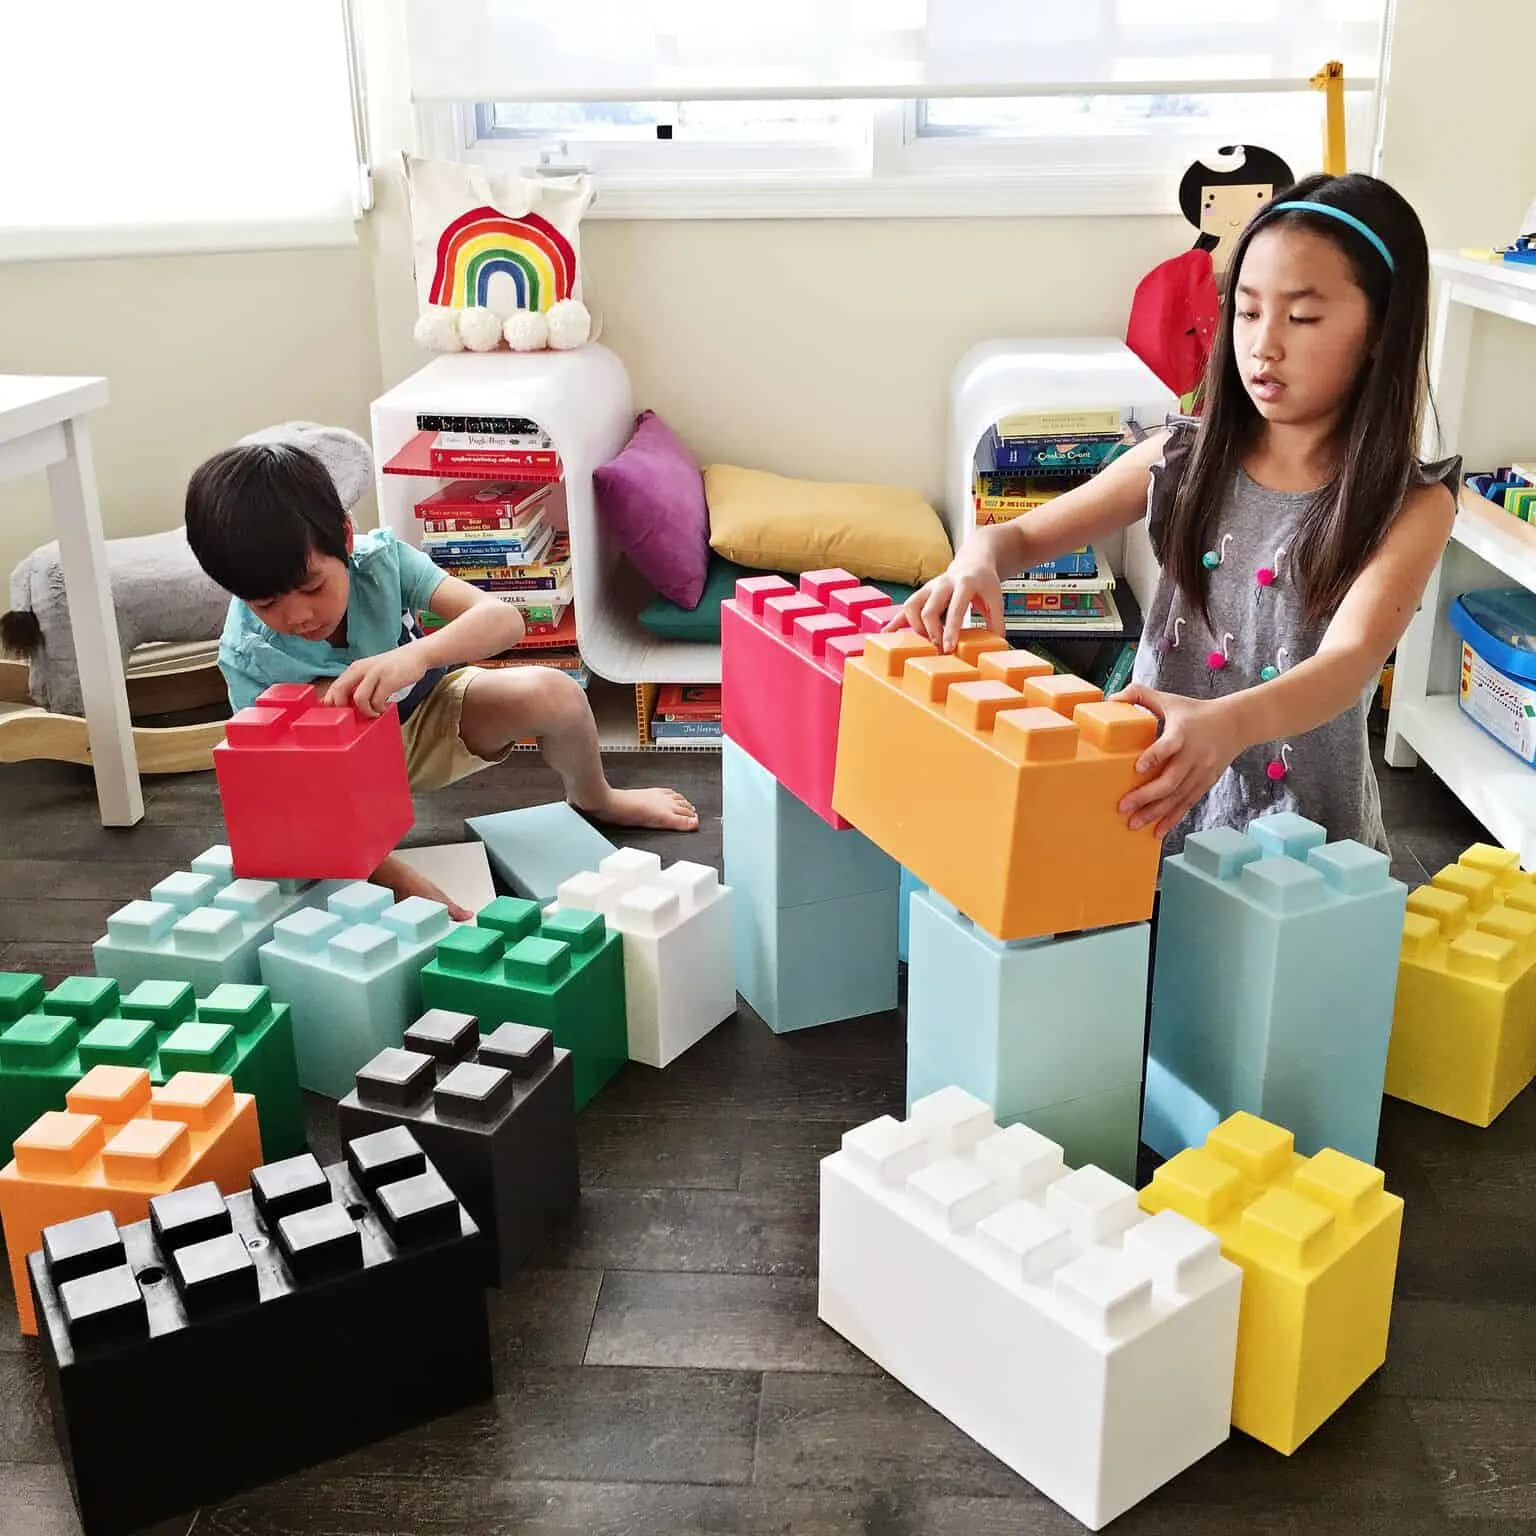 Printable Mine Block Set of 6 DIY Building Blocks Gifts 